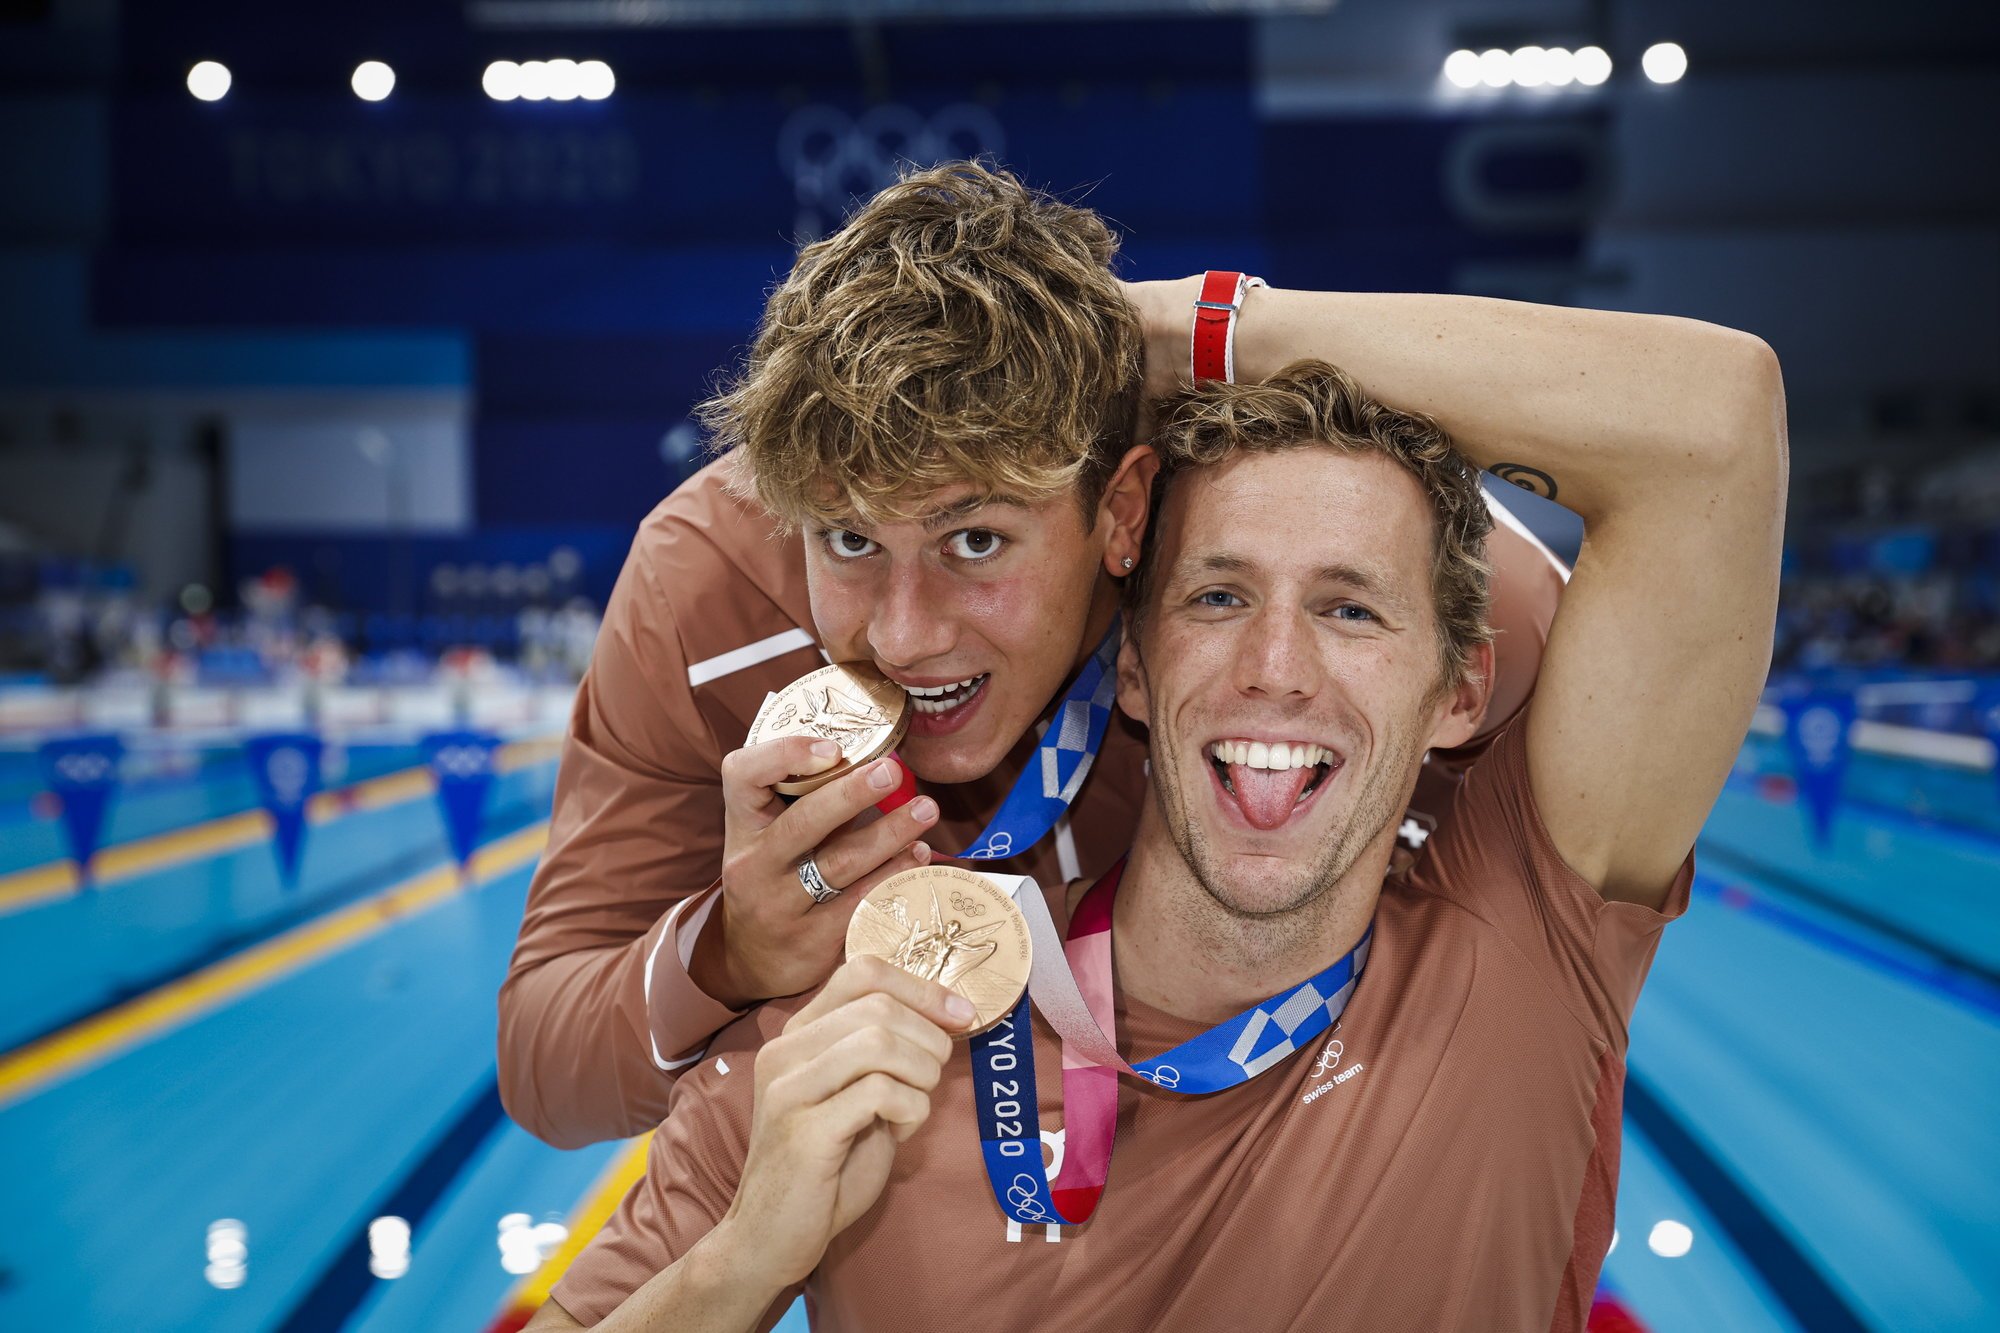 Noè Ponti et Jérémy Desplanches n'ont récolté que les deuxième et troisième médailles olympiques pour la Suisse en natation.